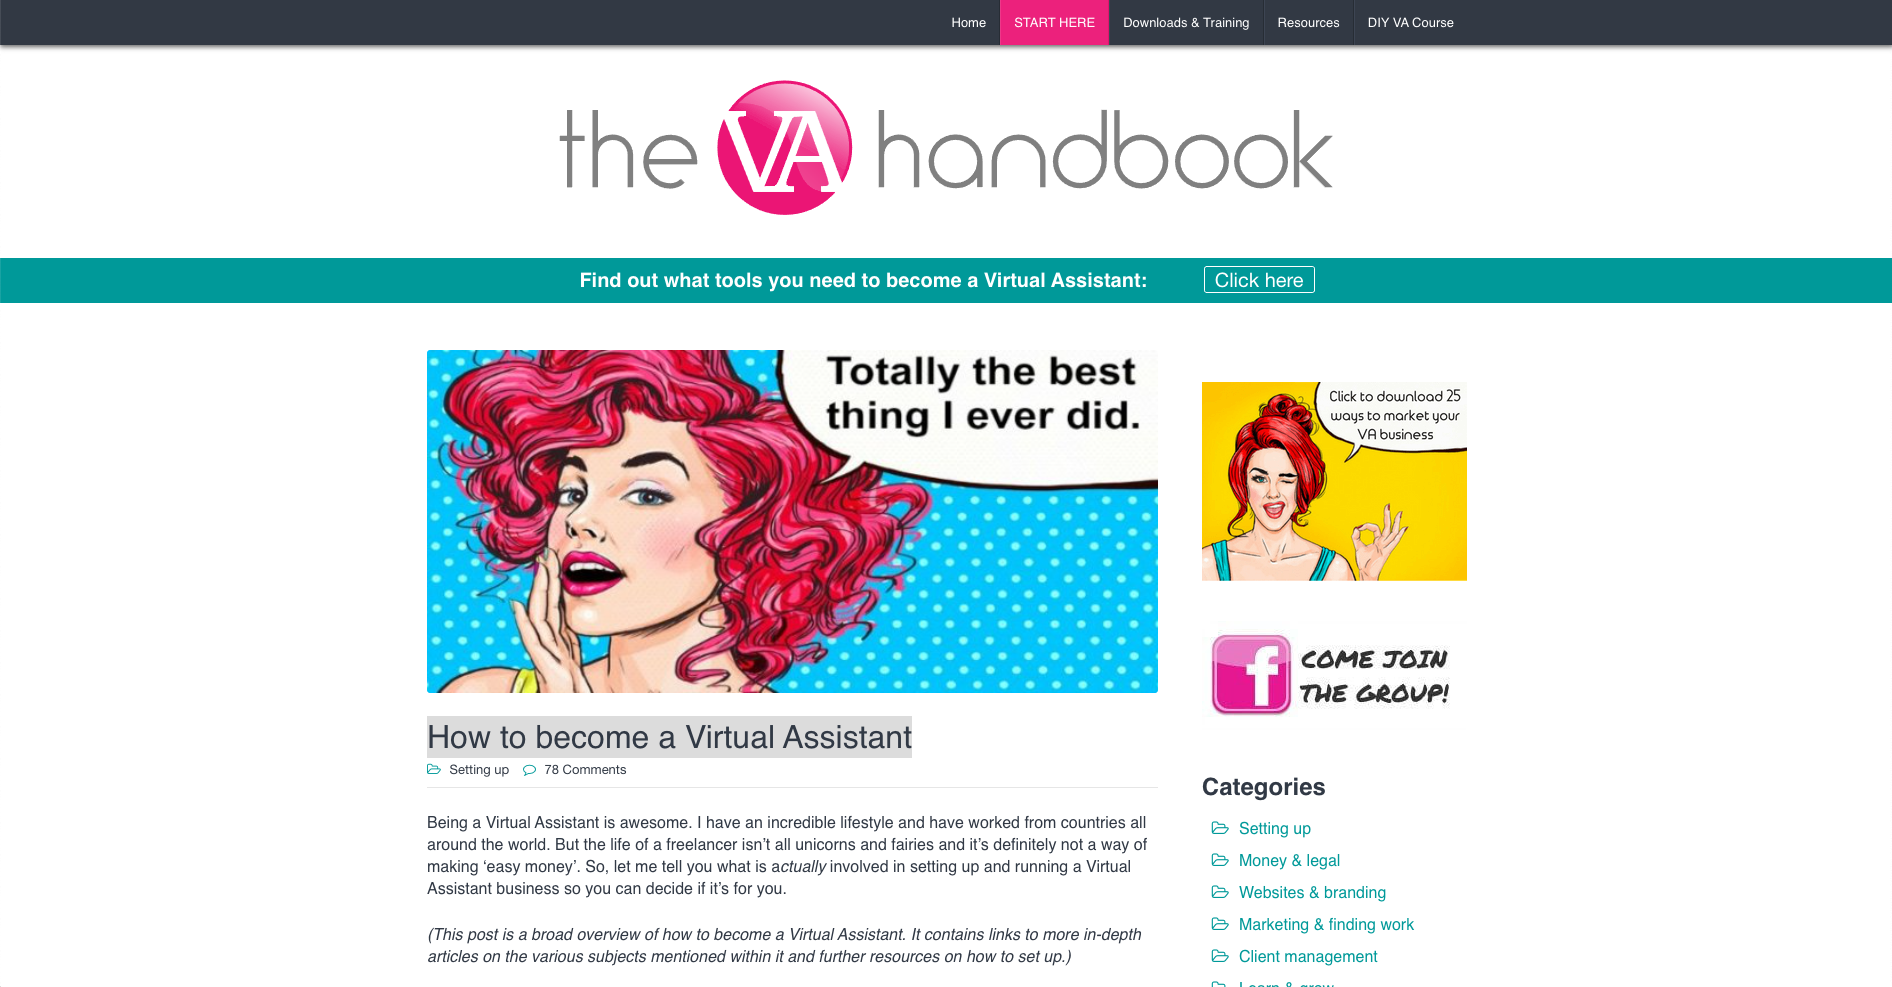 The VA Handbook homepage